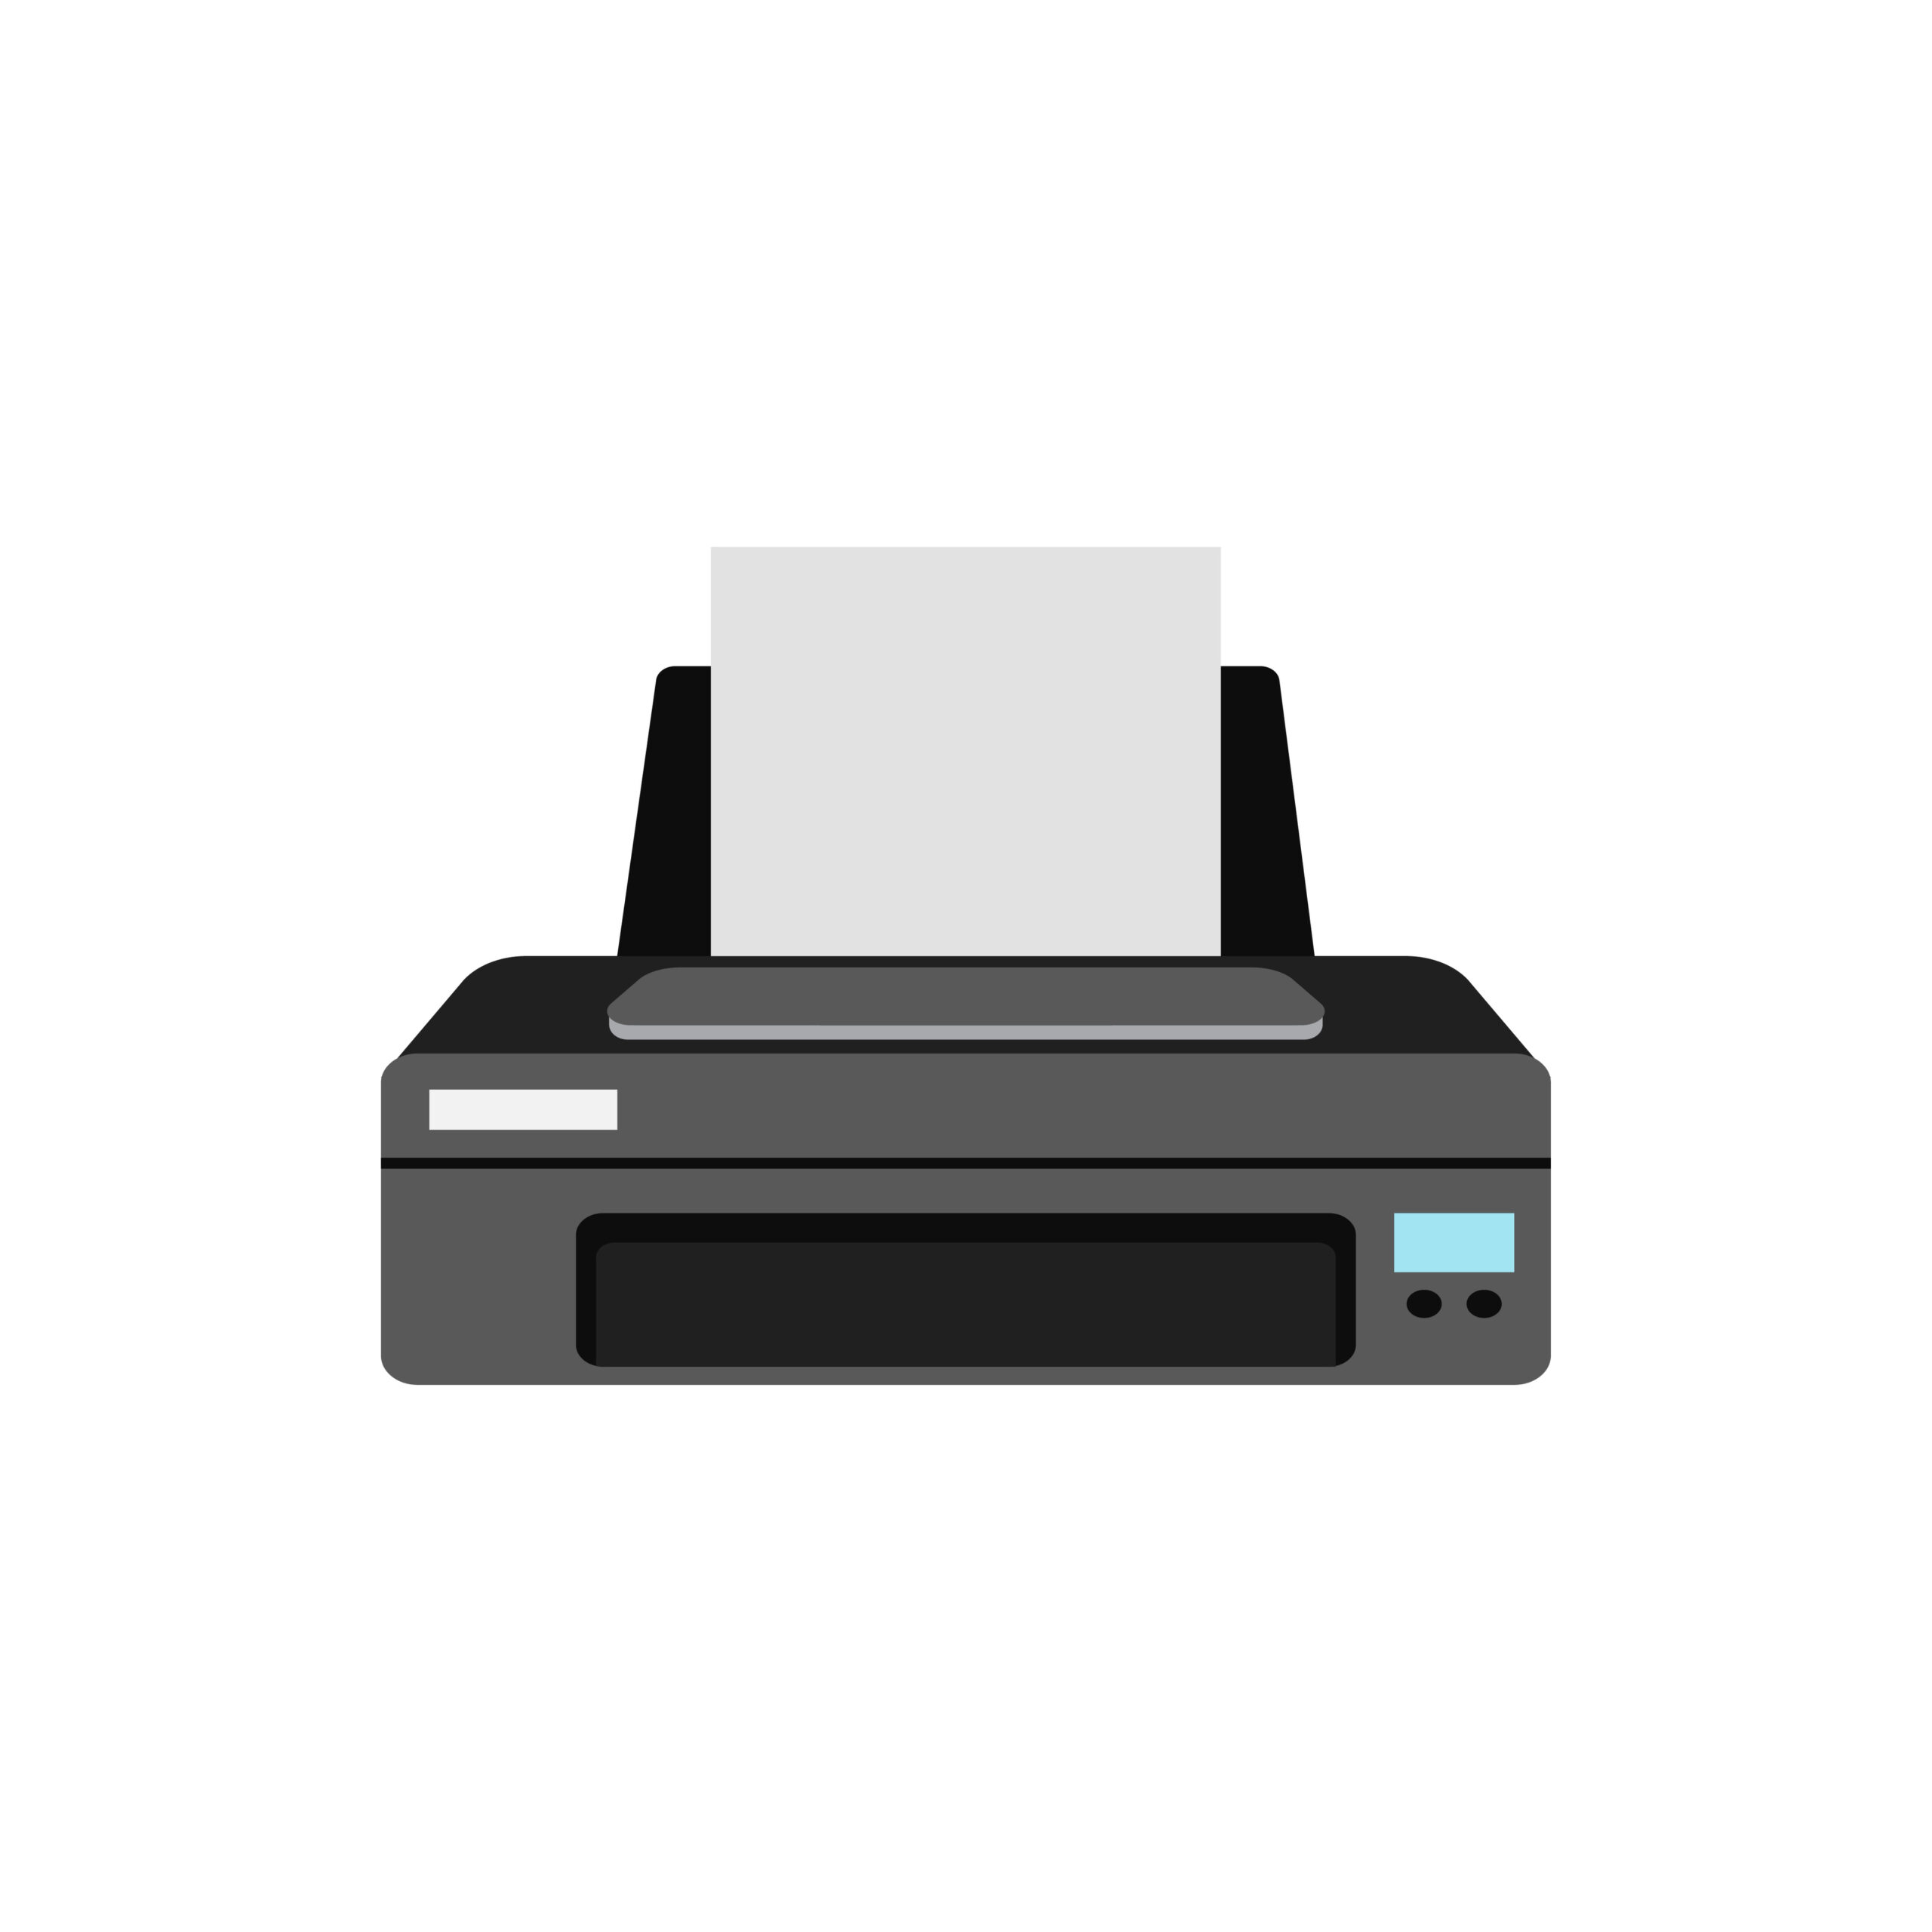 Design of a printer.